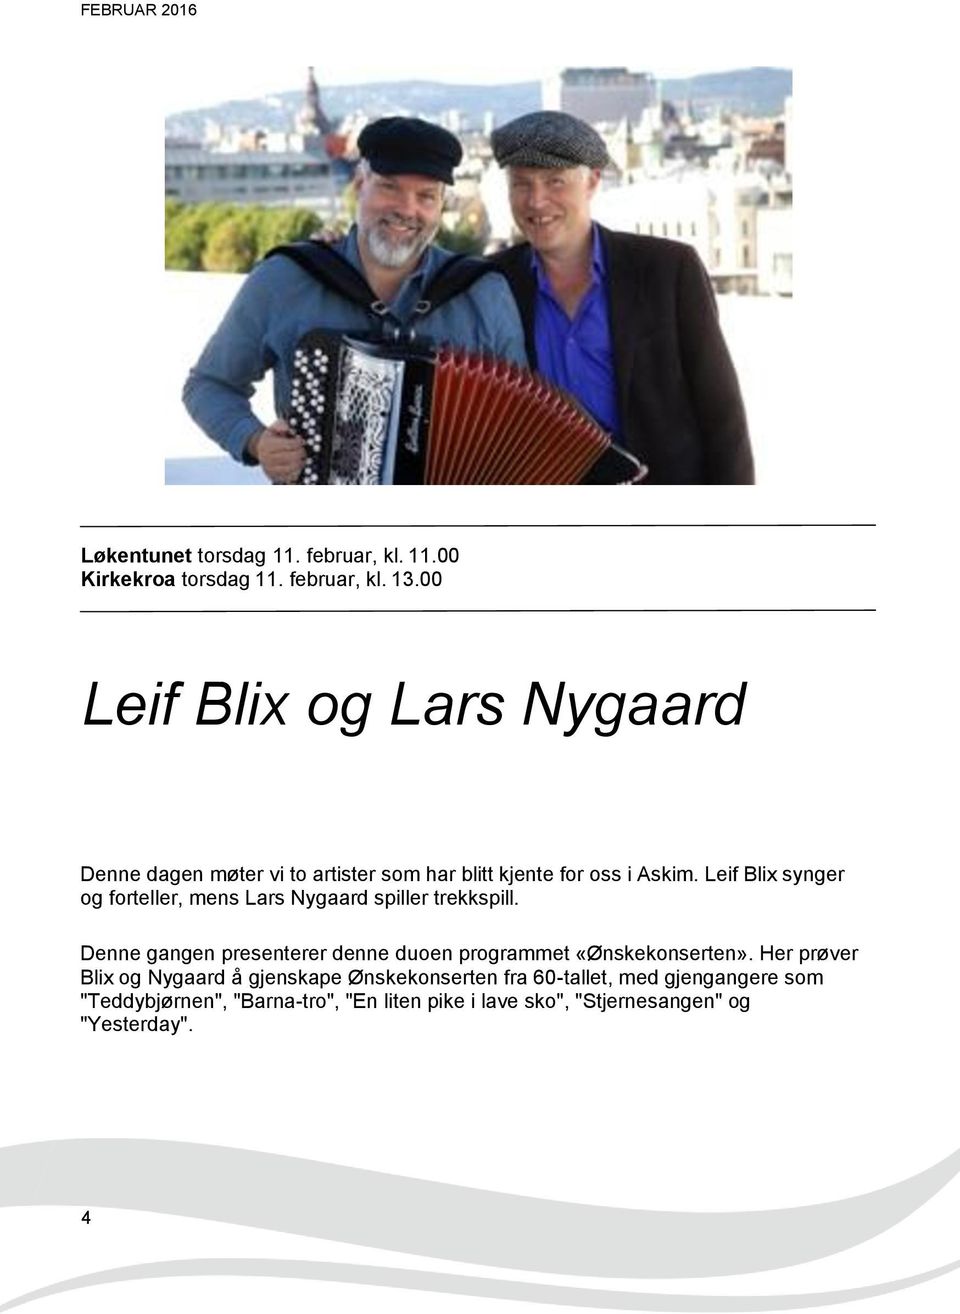 Leif Blix synger og forteller, mens Lars Nygaard spiller trekkspill.